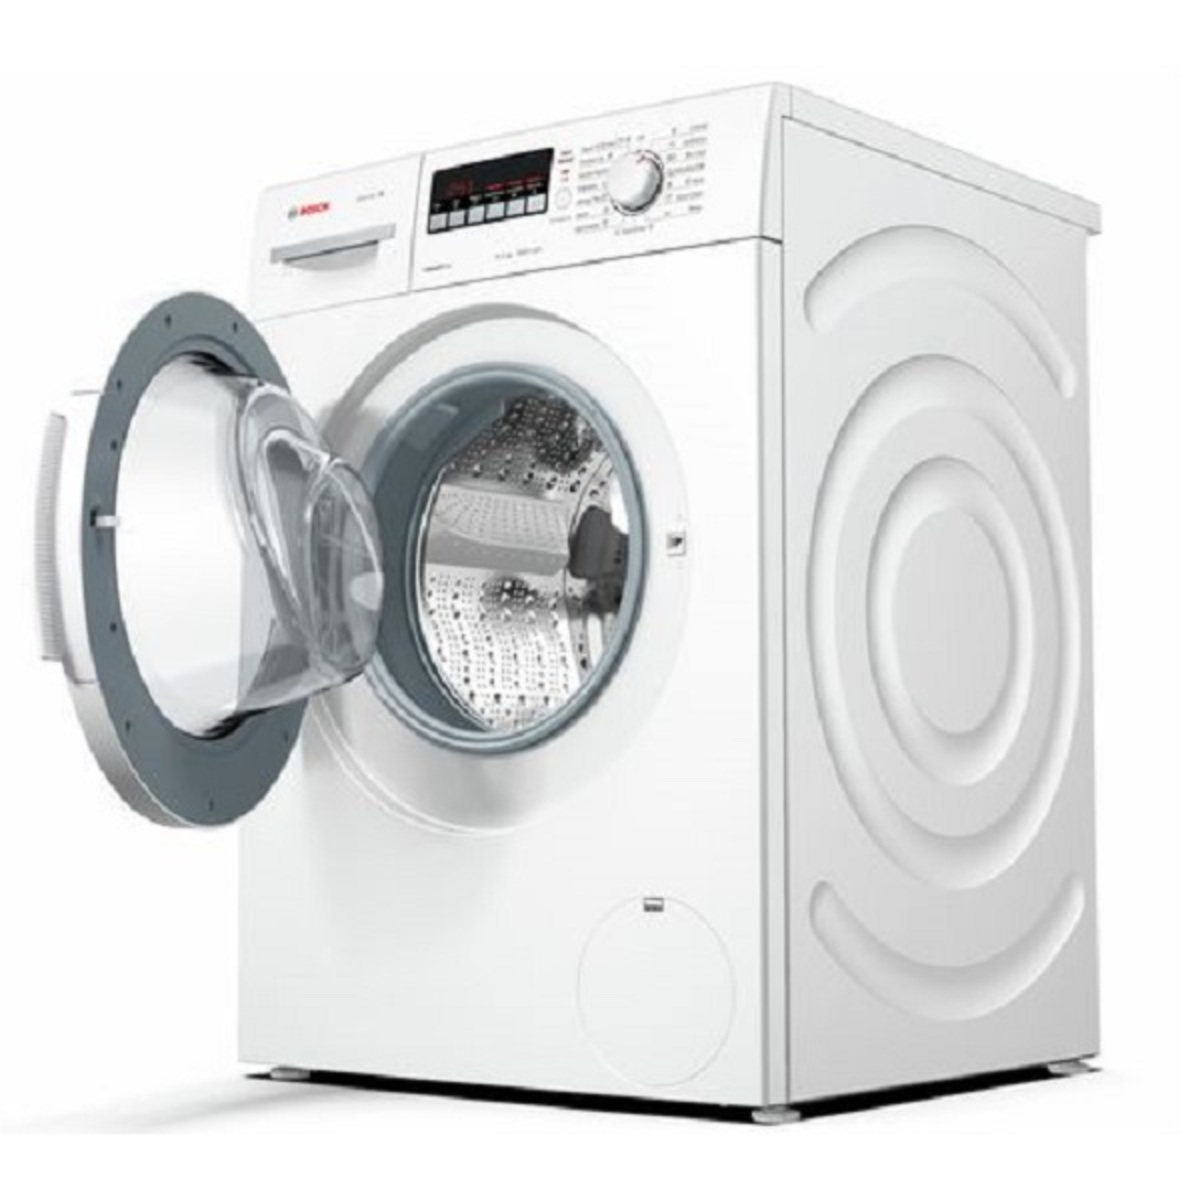 Bosch Washing Machine WAK20265 IN 6.5kg